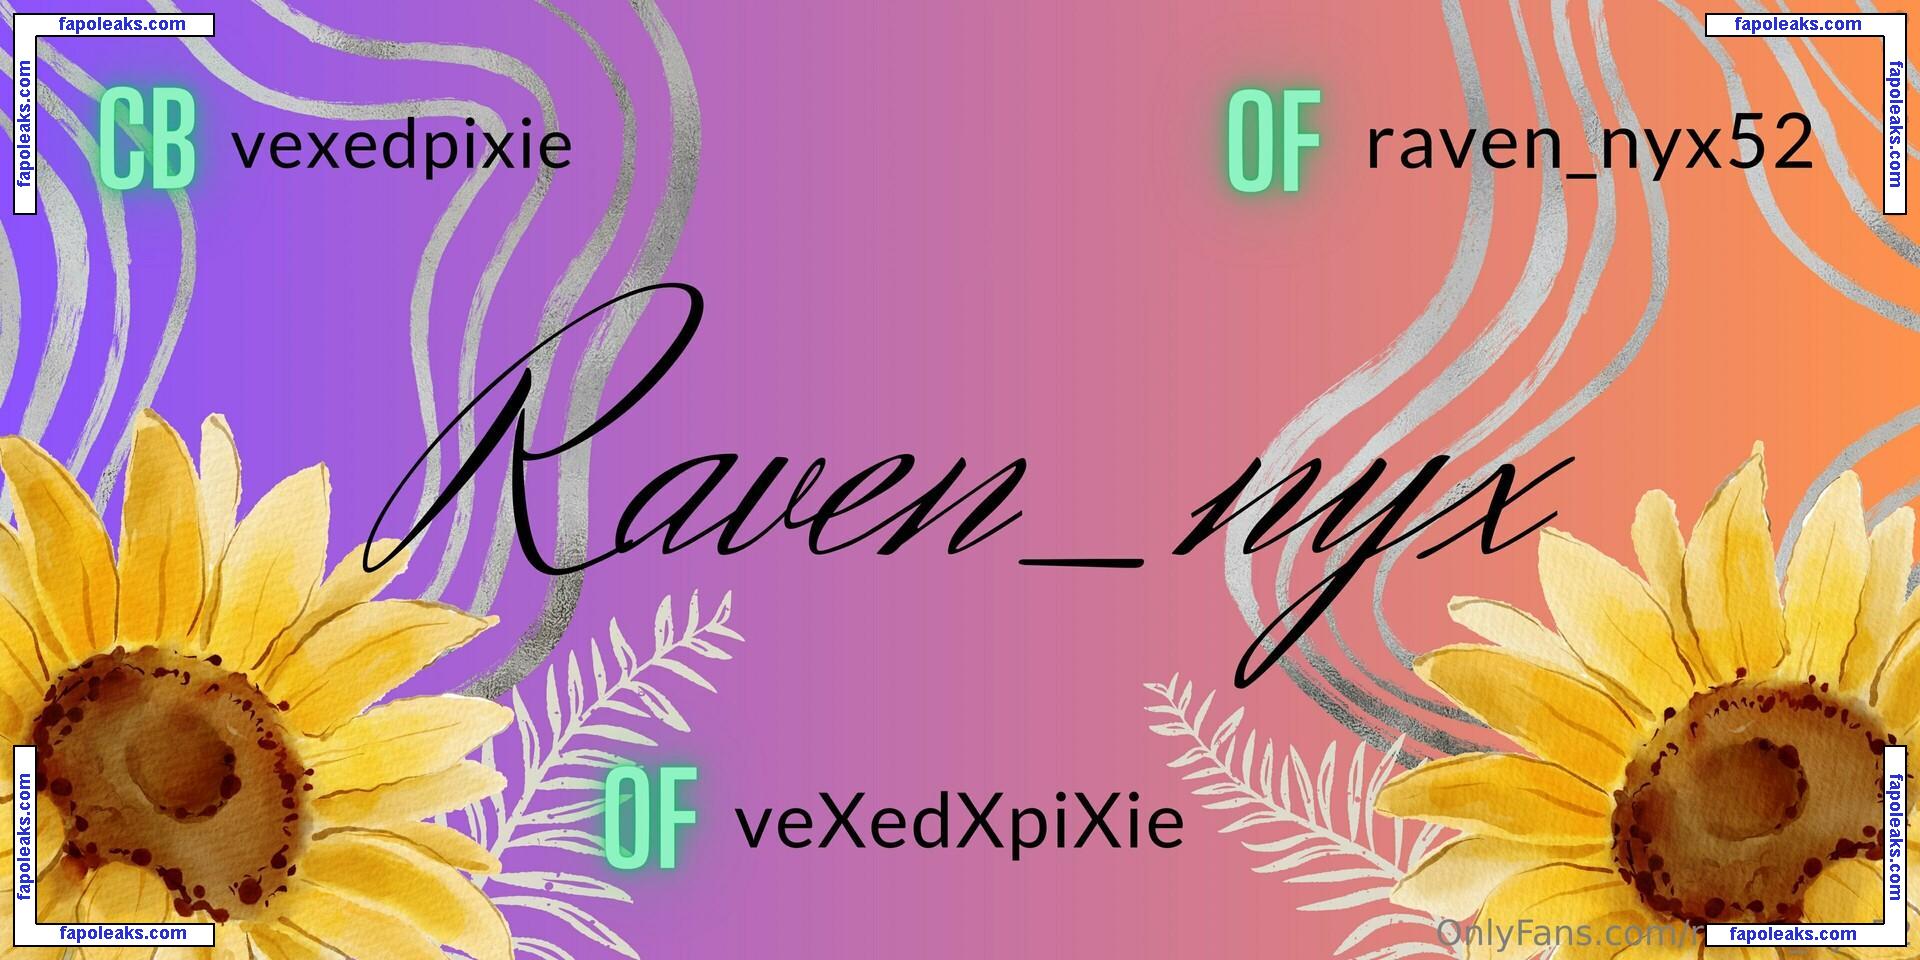 raven_nyx52 / raven__nyxx голая фото #0031 с Онлифанс